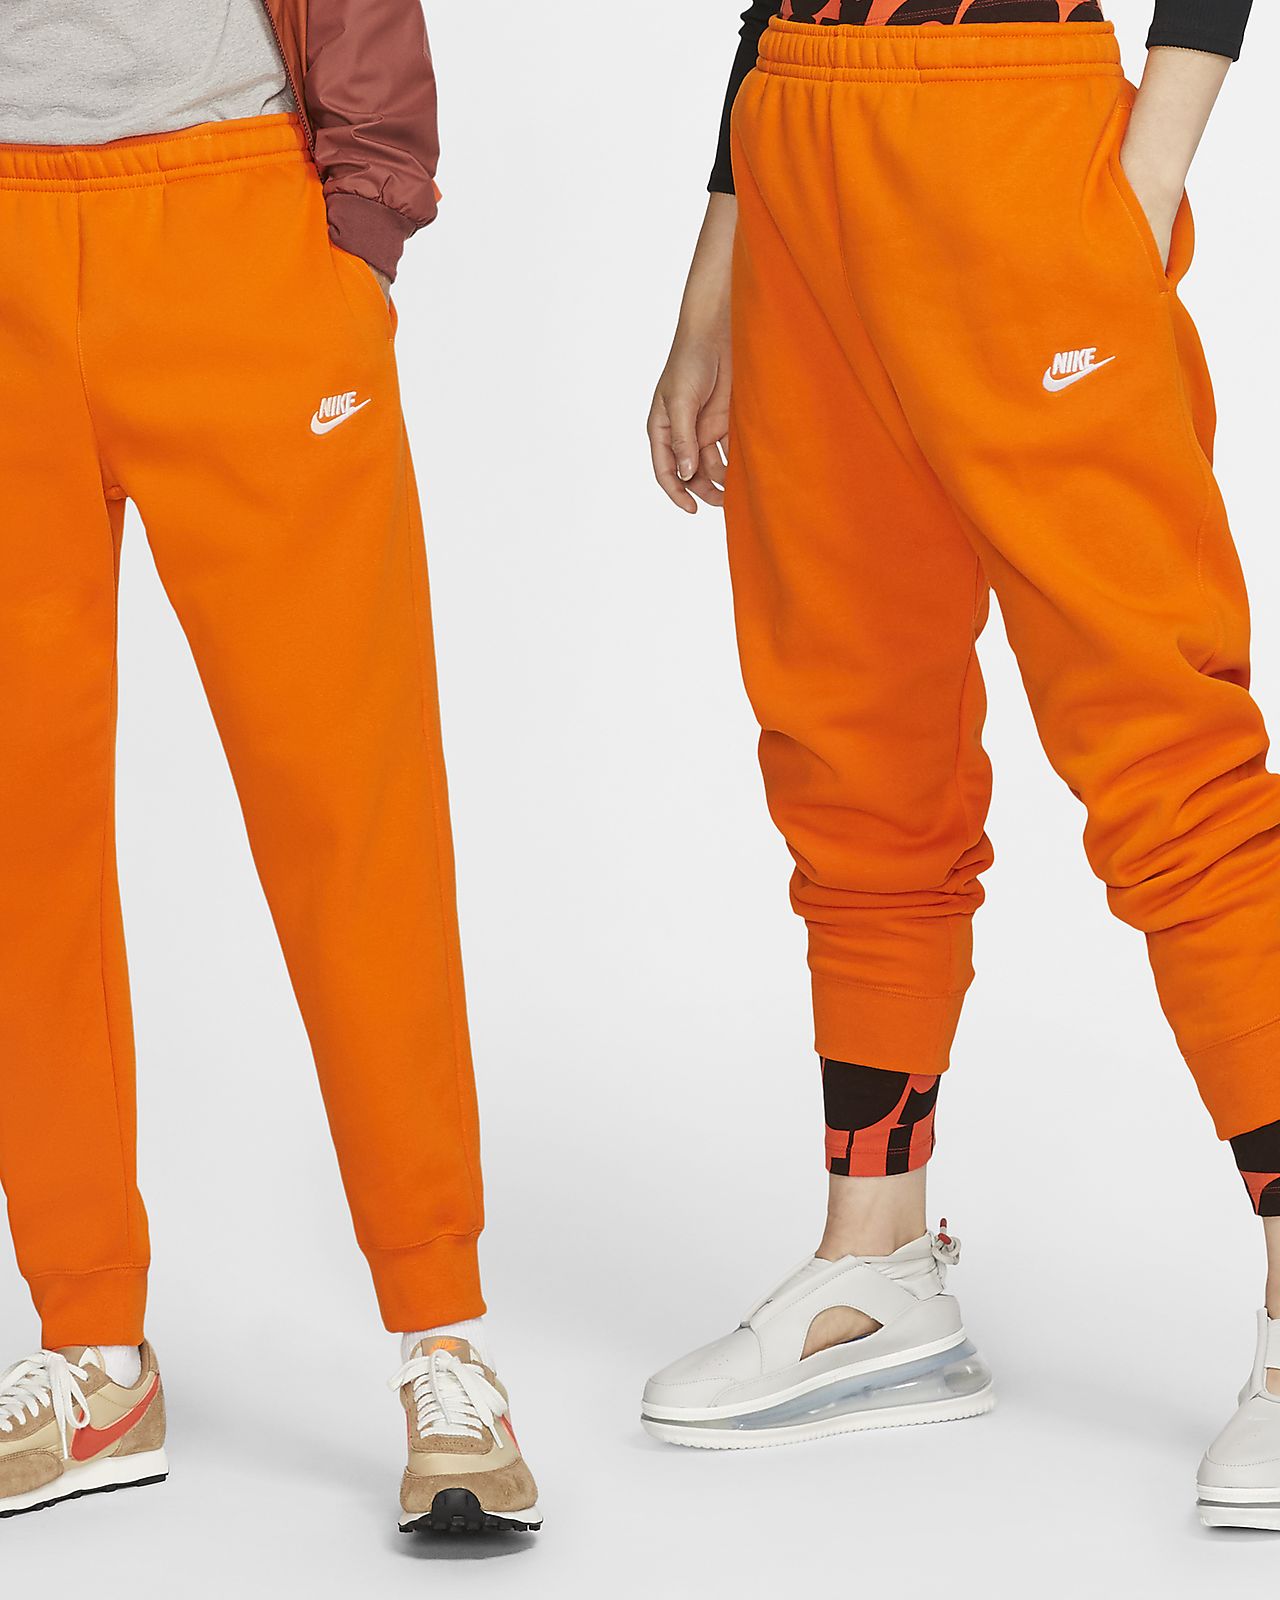 nike orange pants